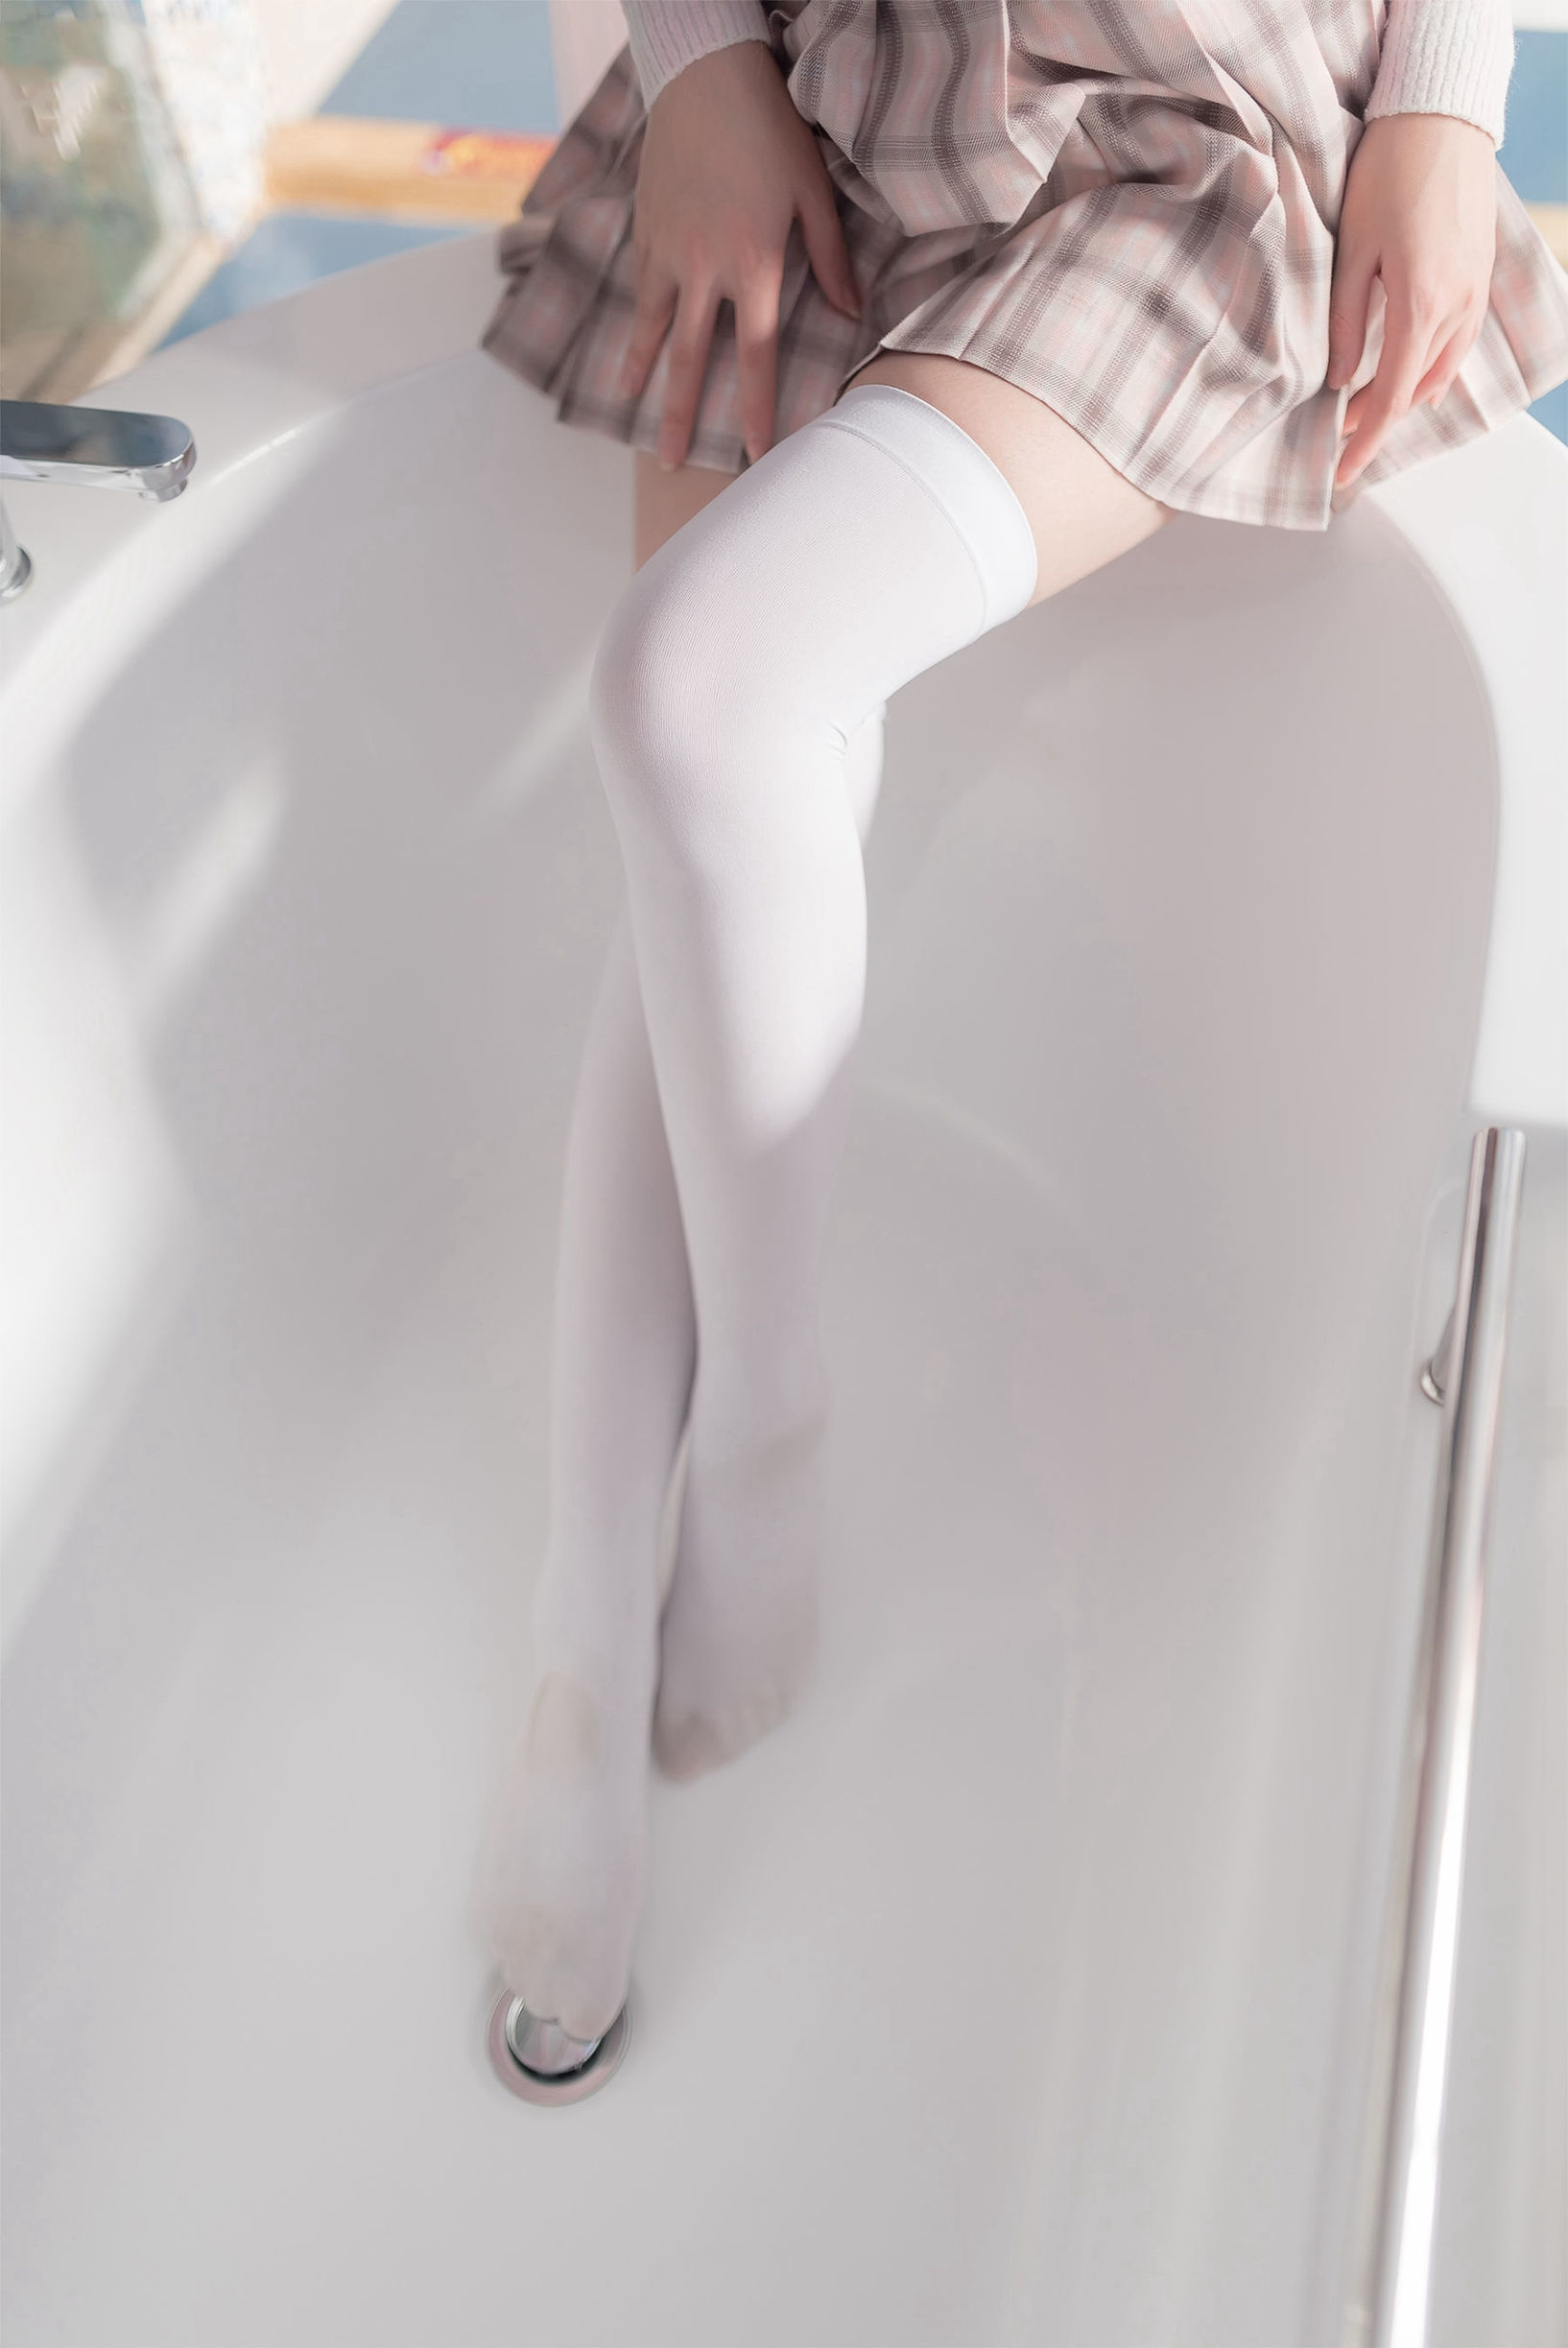 [风之领域] NO.087 浴室日系过膝白丝-番茄美图